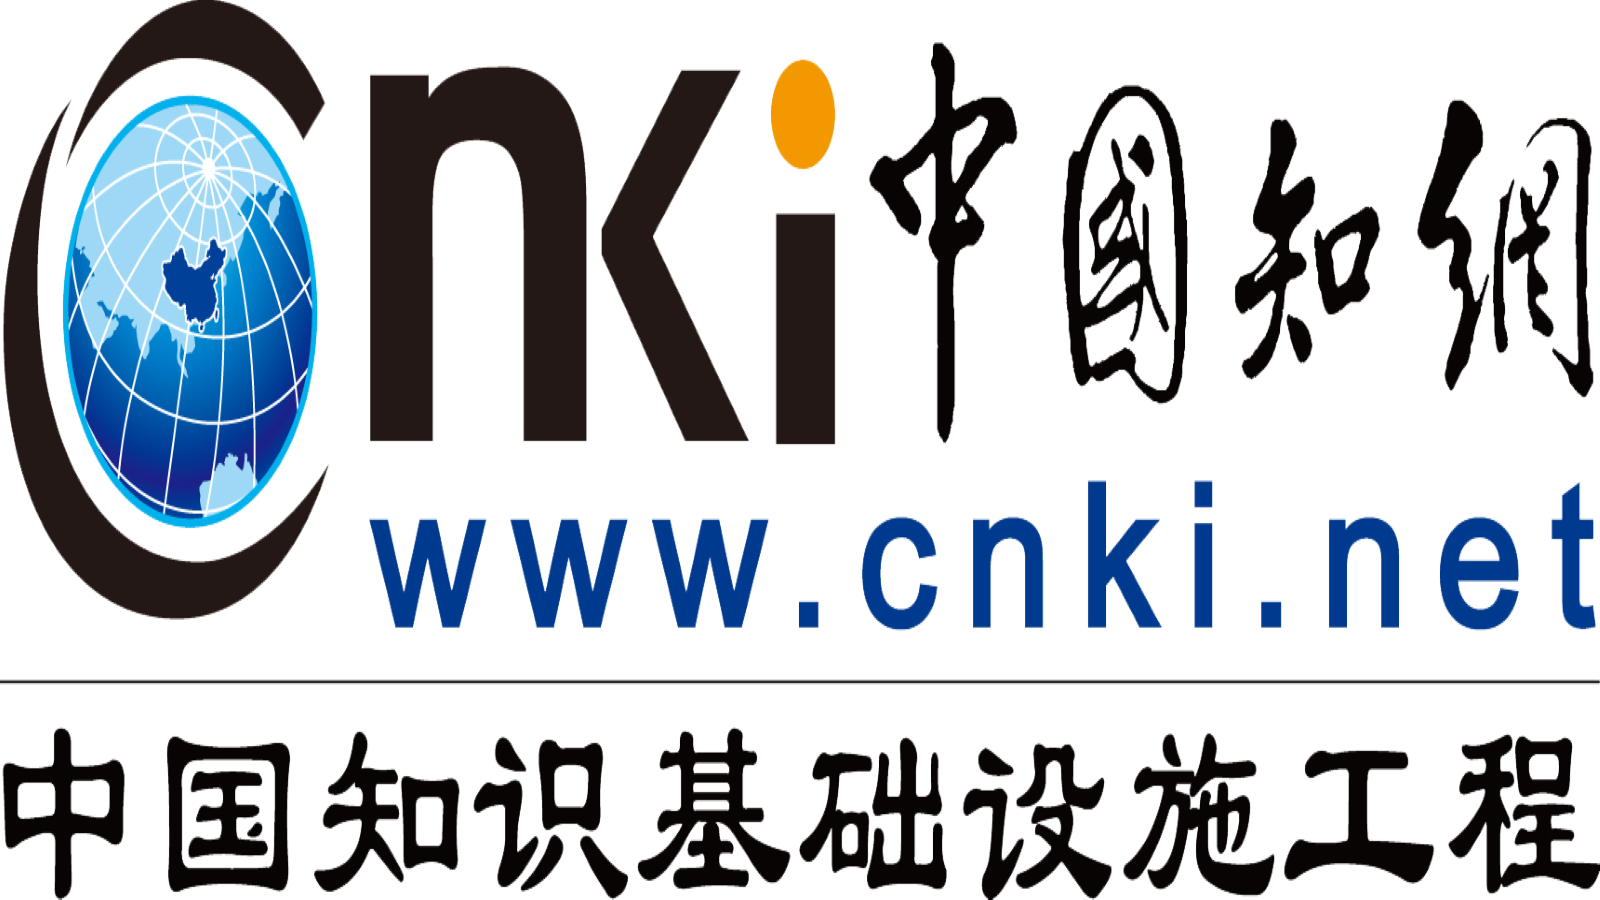 CNKI logo